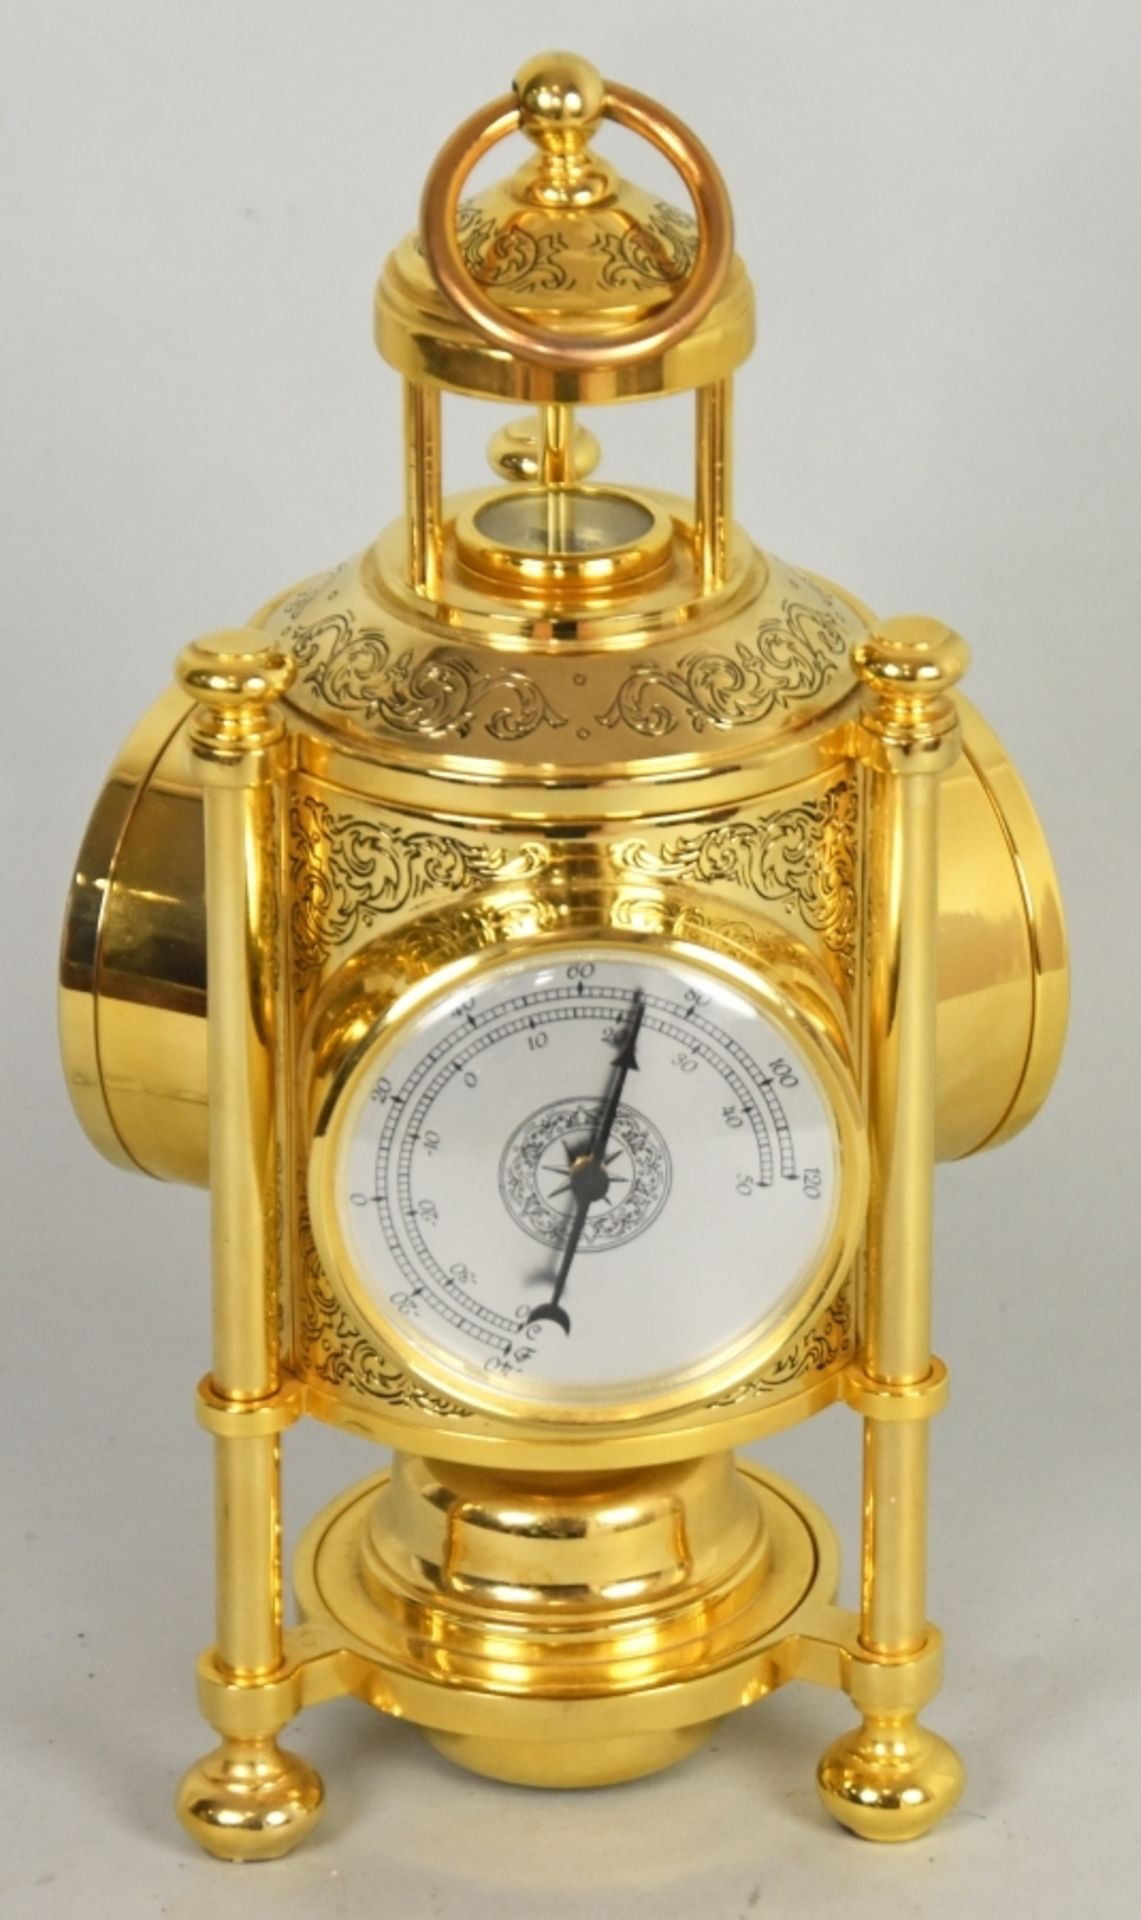 BAROMETER-UHR mit Thermometer und Kompass - Bild 2 aus 3